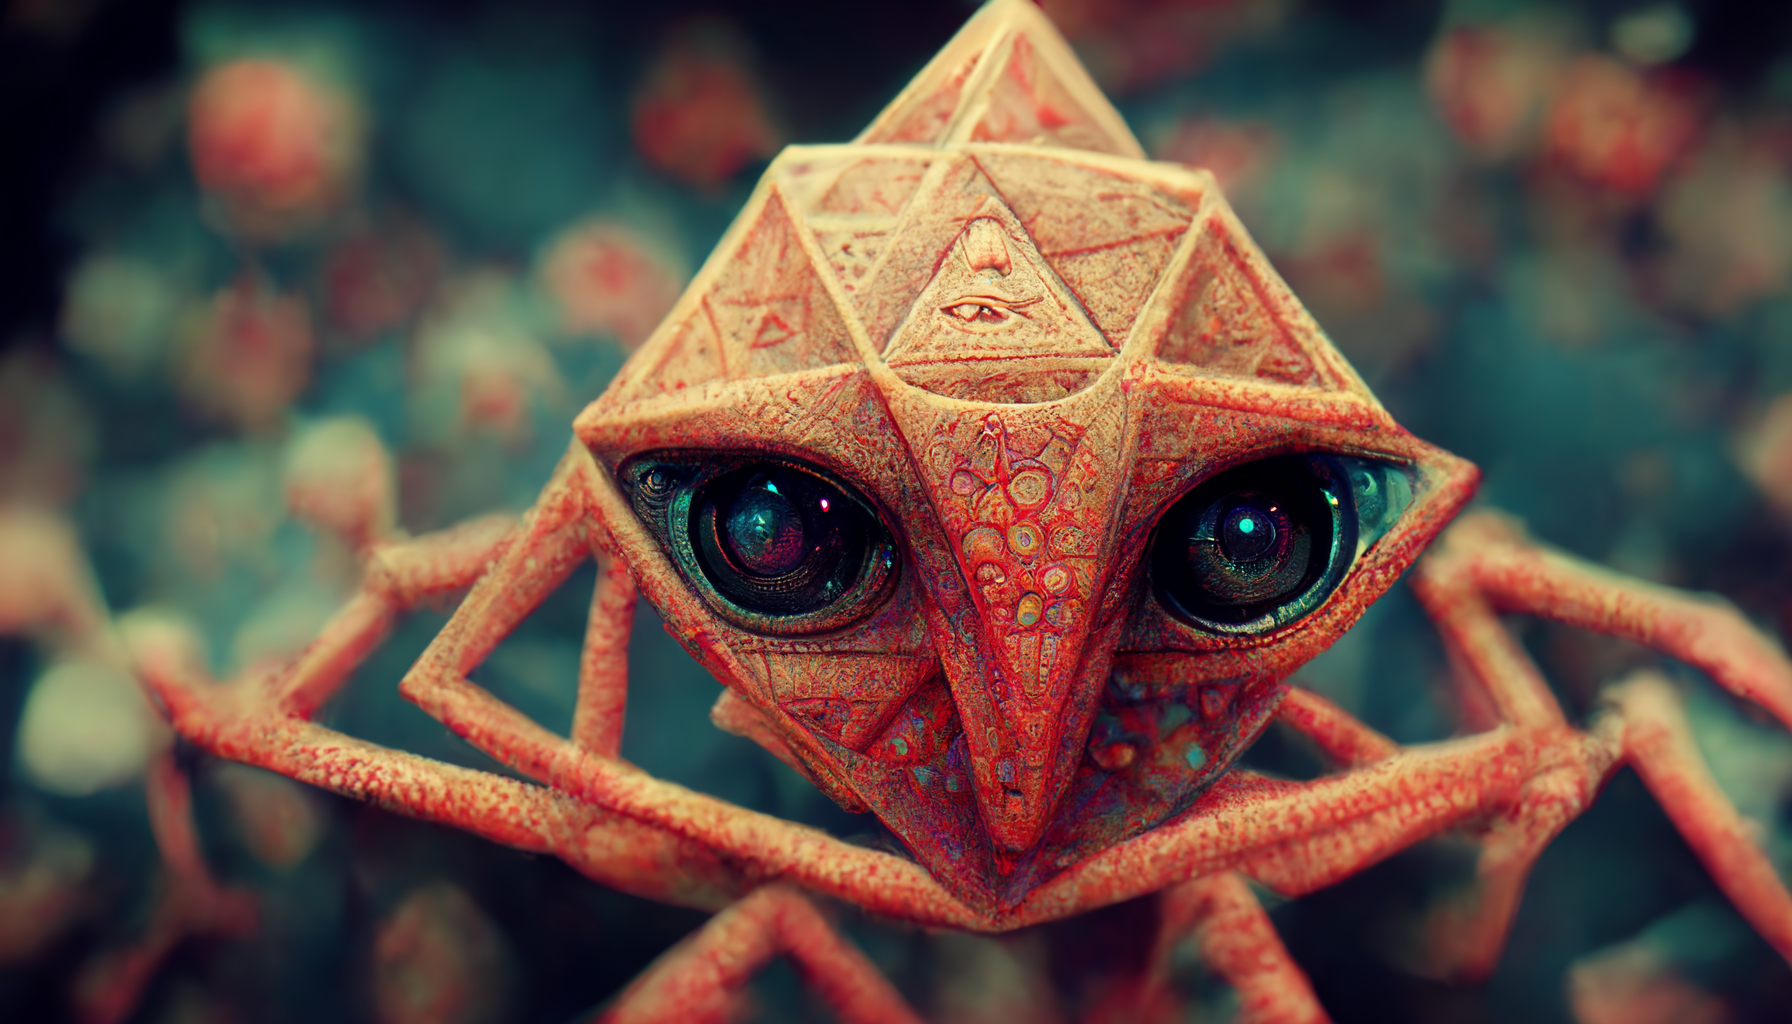 WPAHP_weird_creature_DMT_aliens_tetrahedron_digital_art_mc_esch_08f0bb66-02d3-4467-992f-695ce60c122f.png